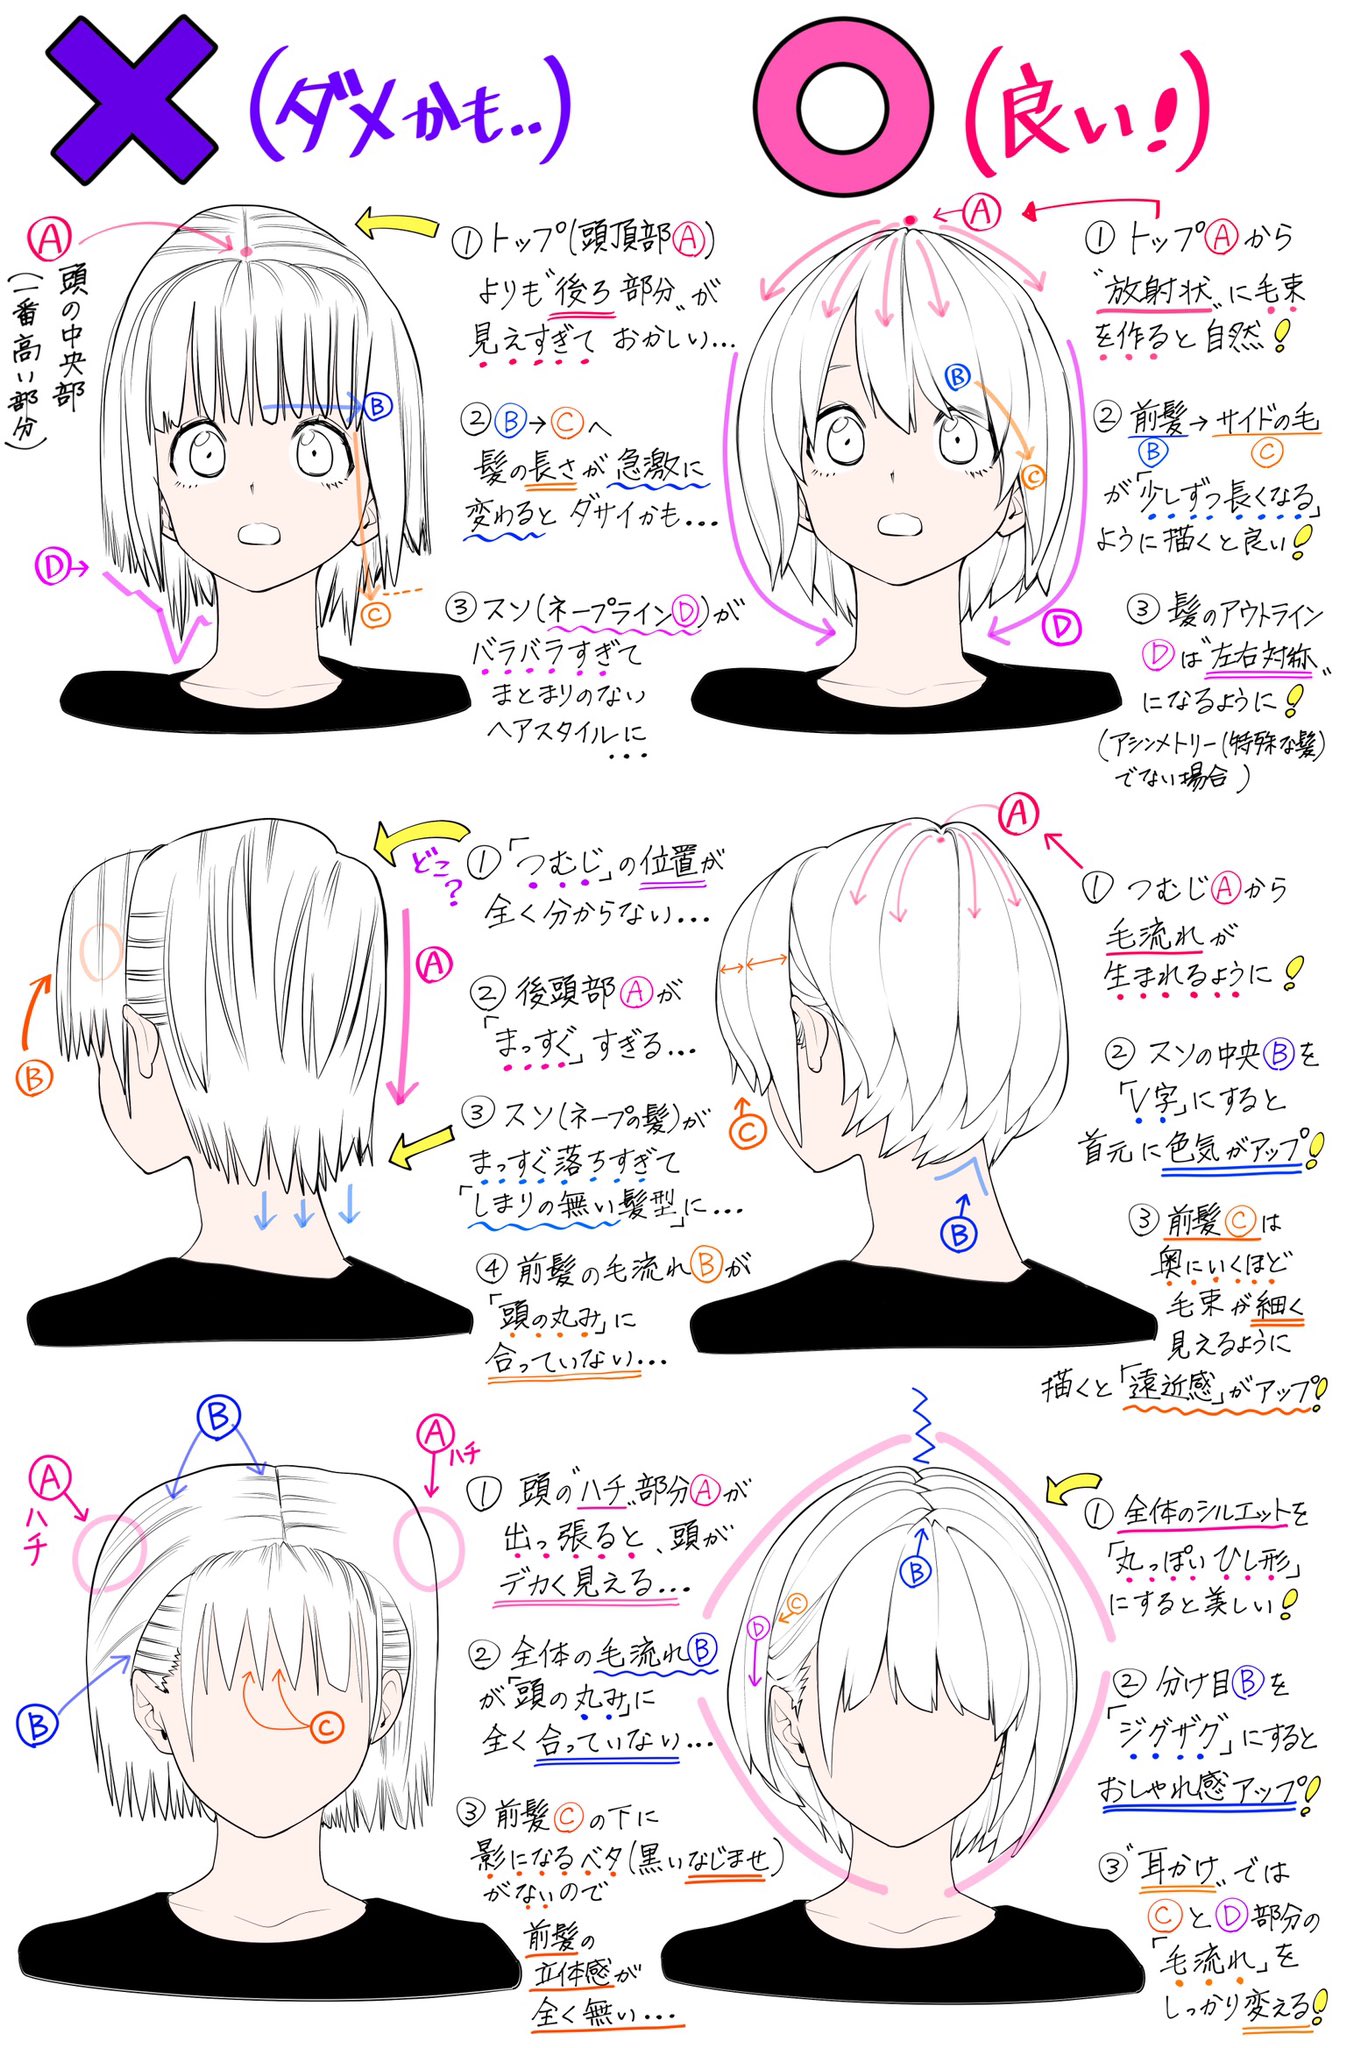 吉村拓也 イラスト講座 ショートヘアの描き方 女性の髪型 を描くときの ダメなこと と 良いこと T Co Azg18zimni Twitter